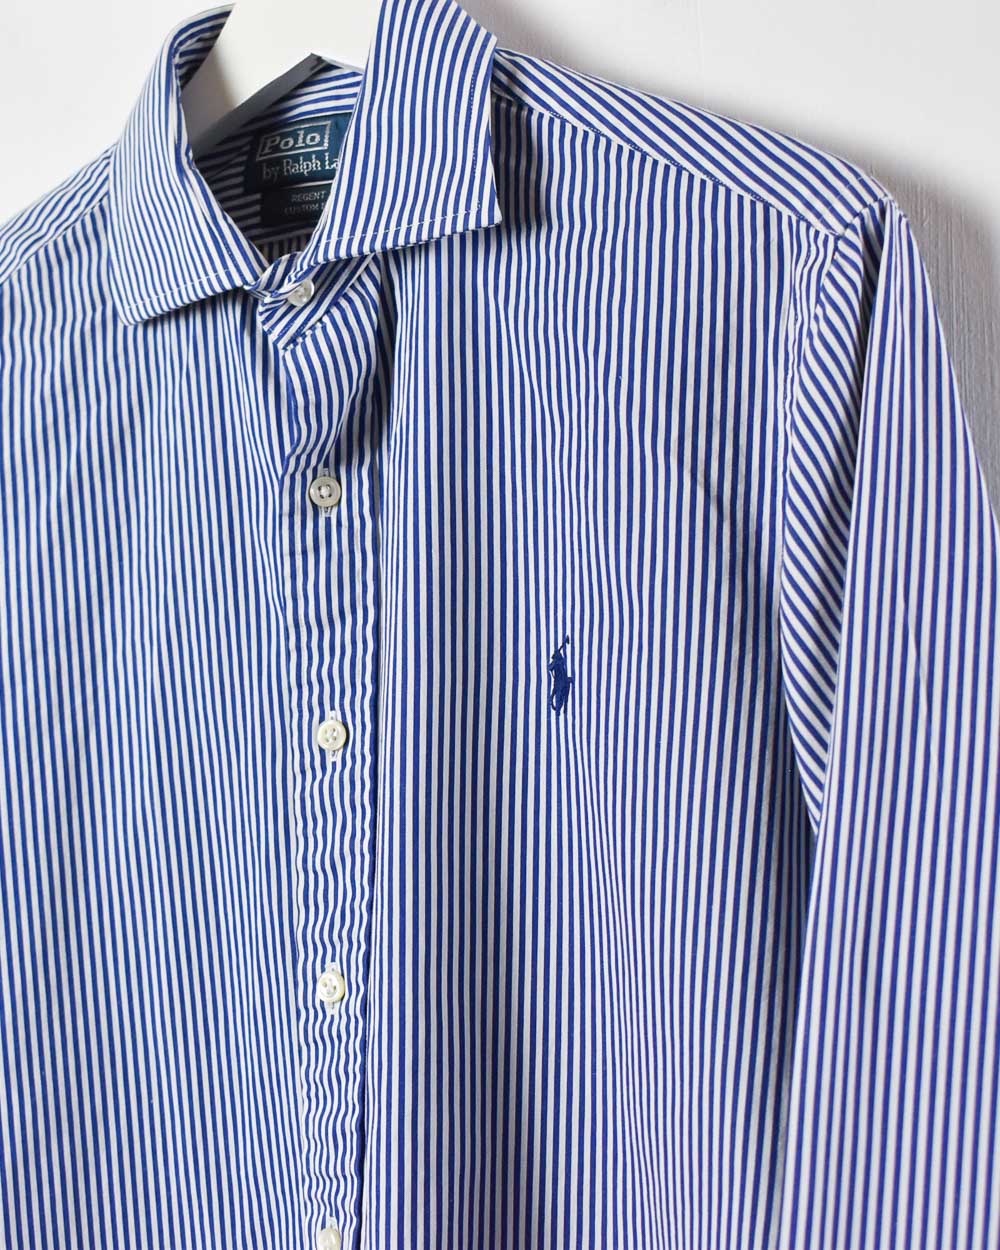 Blue Polo Ralph Lauren Regent Striped Shirt - Medium